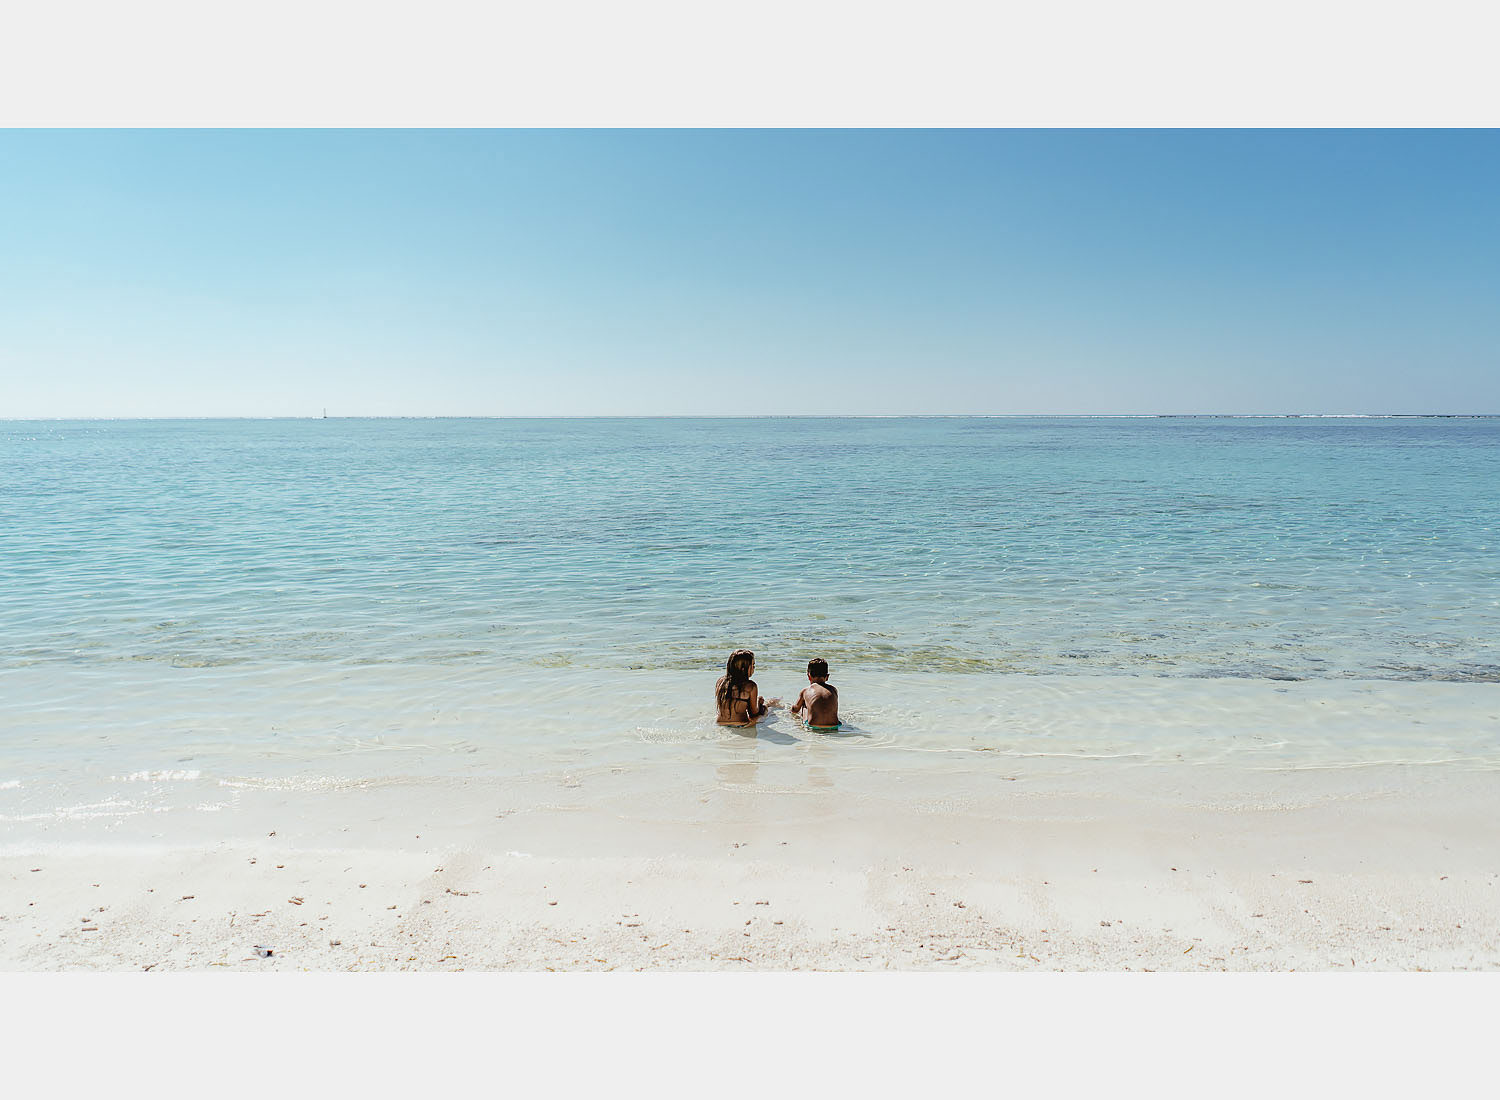 wedding photographer in maldives anniversary trip cocoon private beach sea family fun